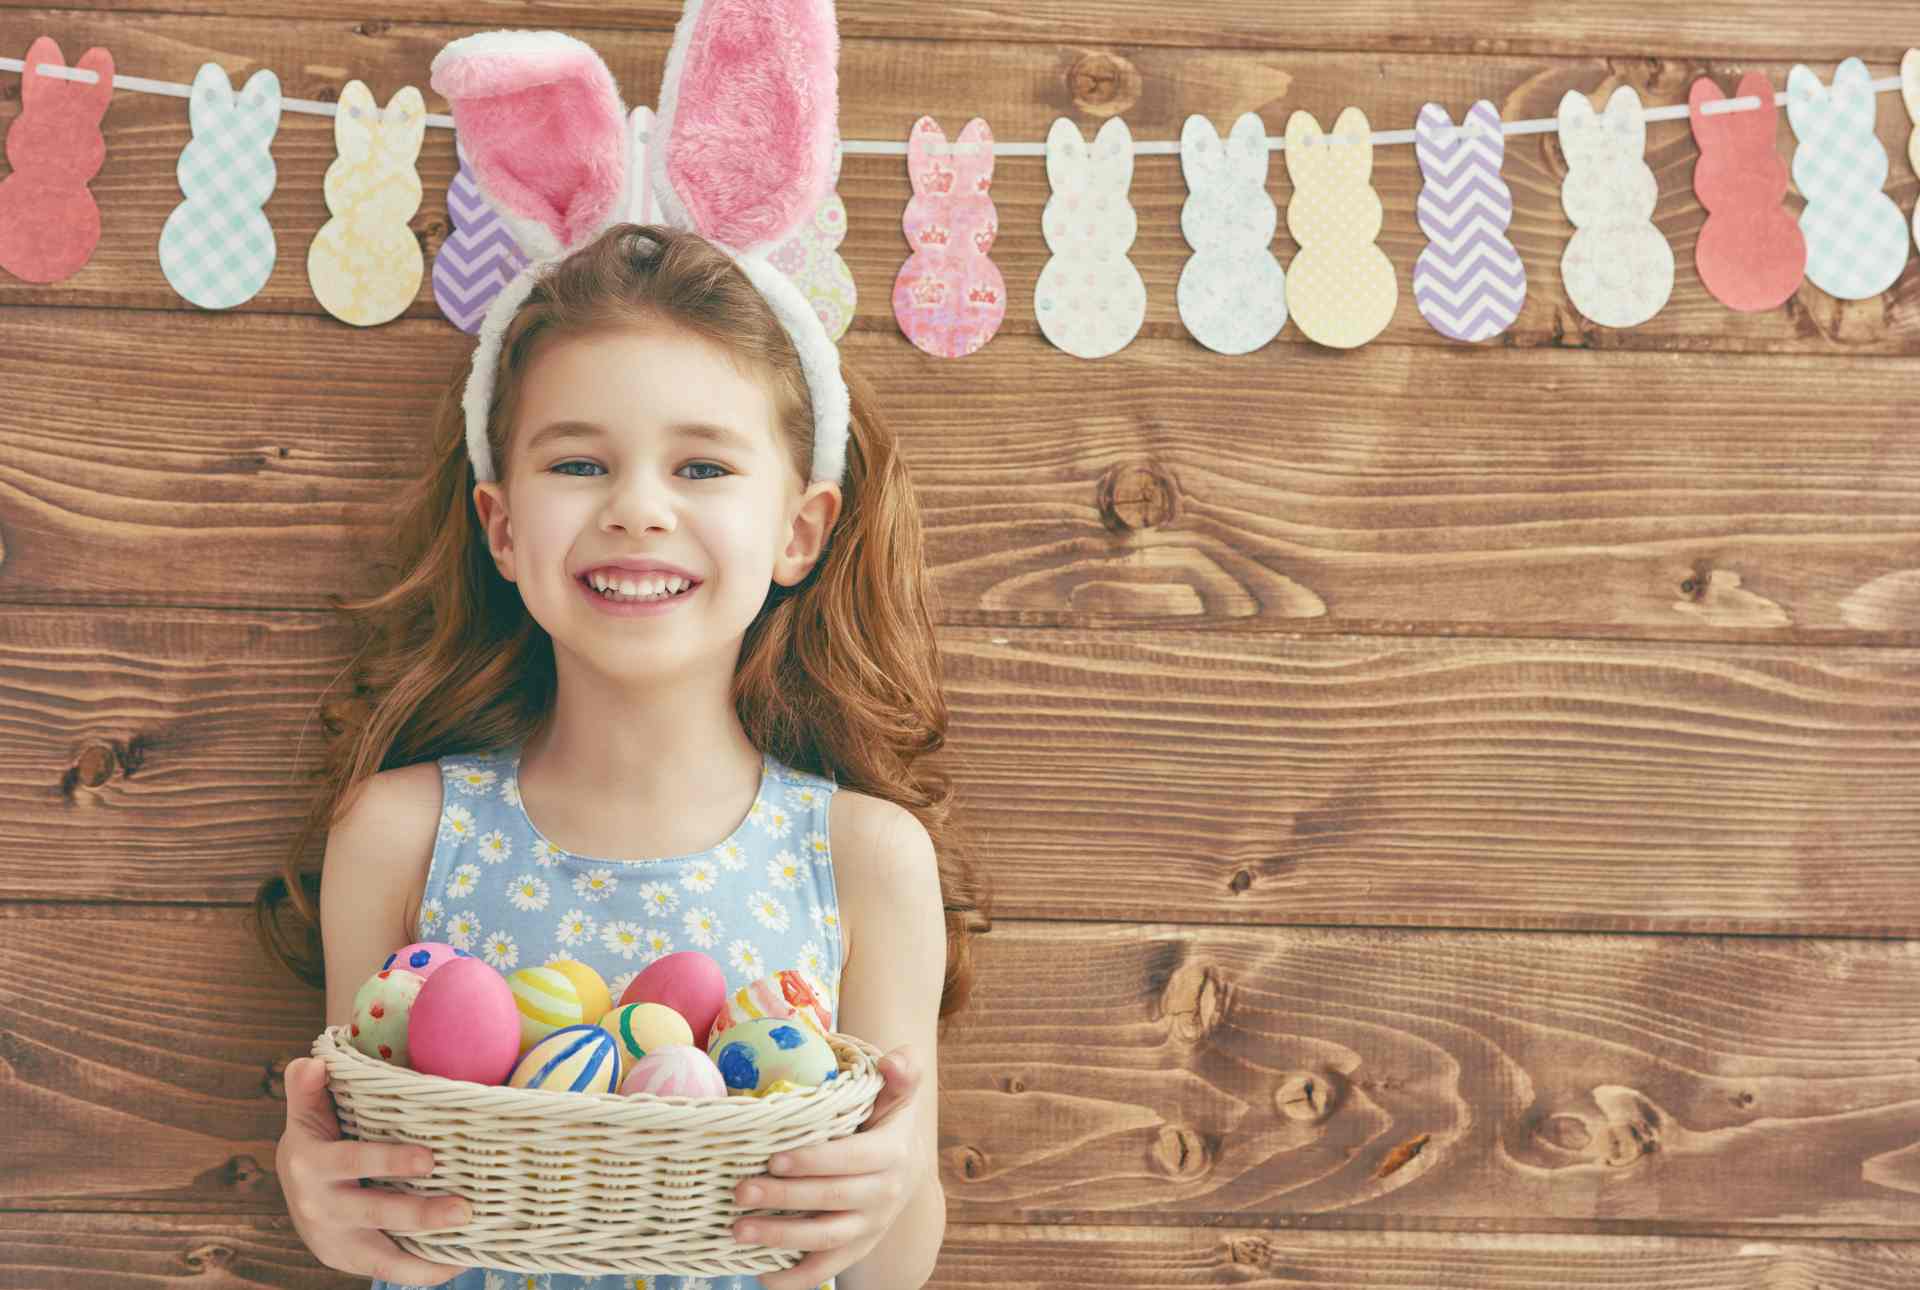 Muslim Kids in US Colored Eggs & Easter Bunnies